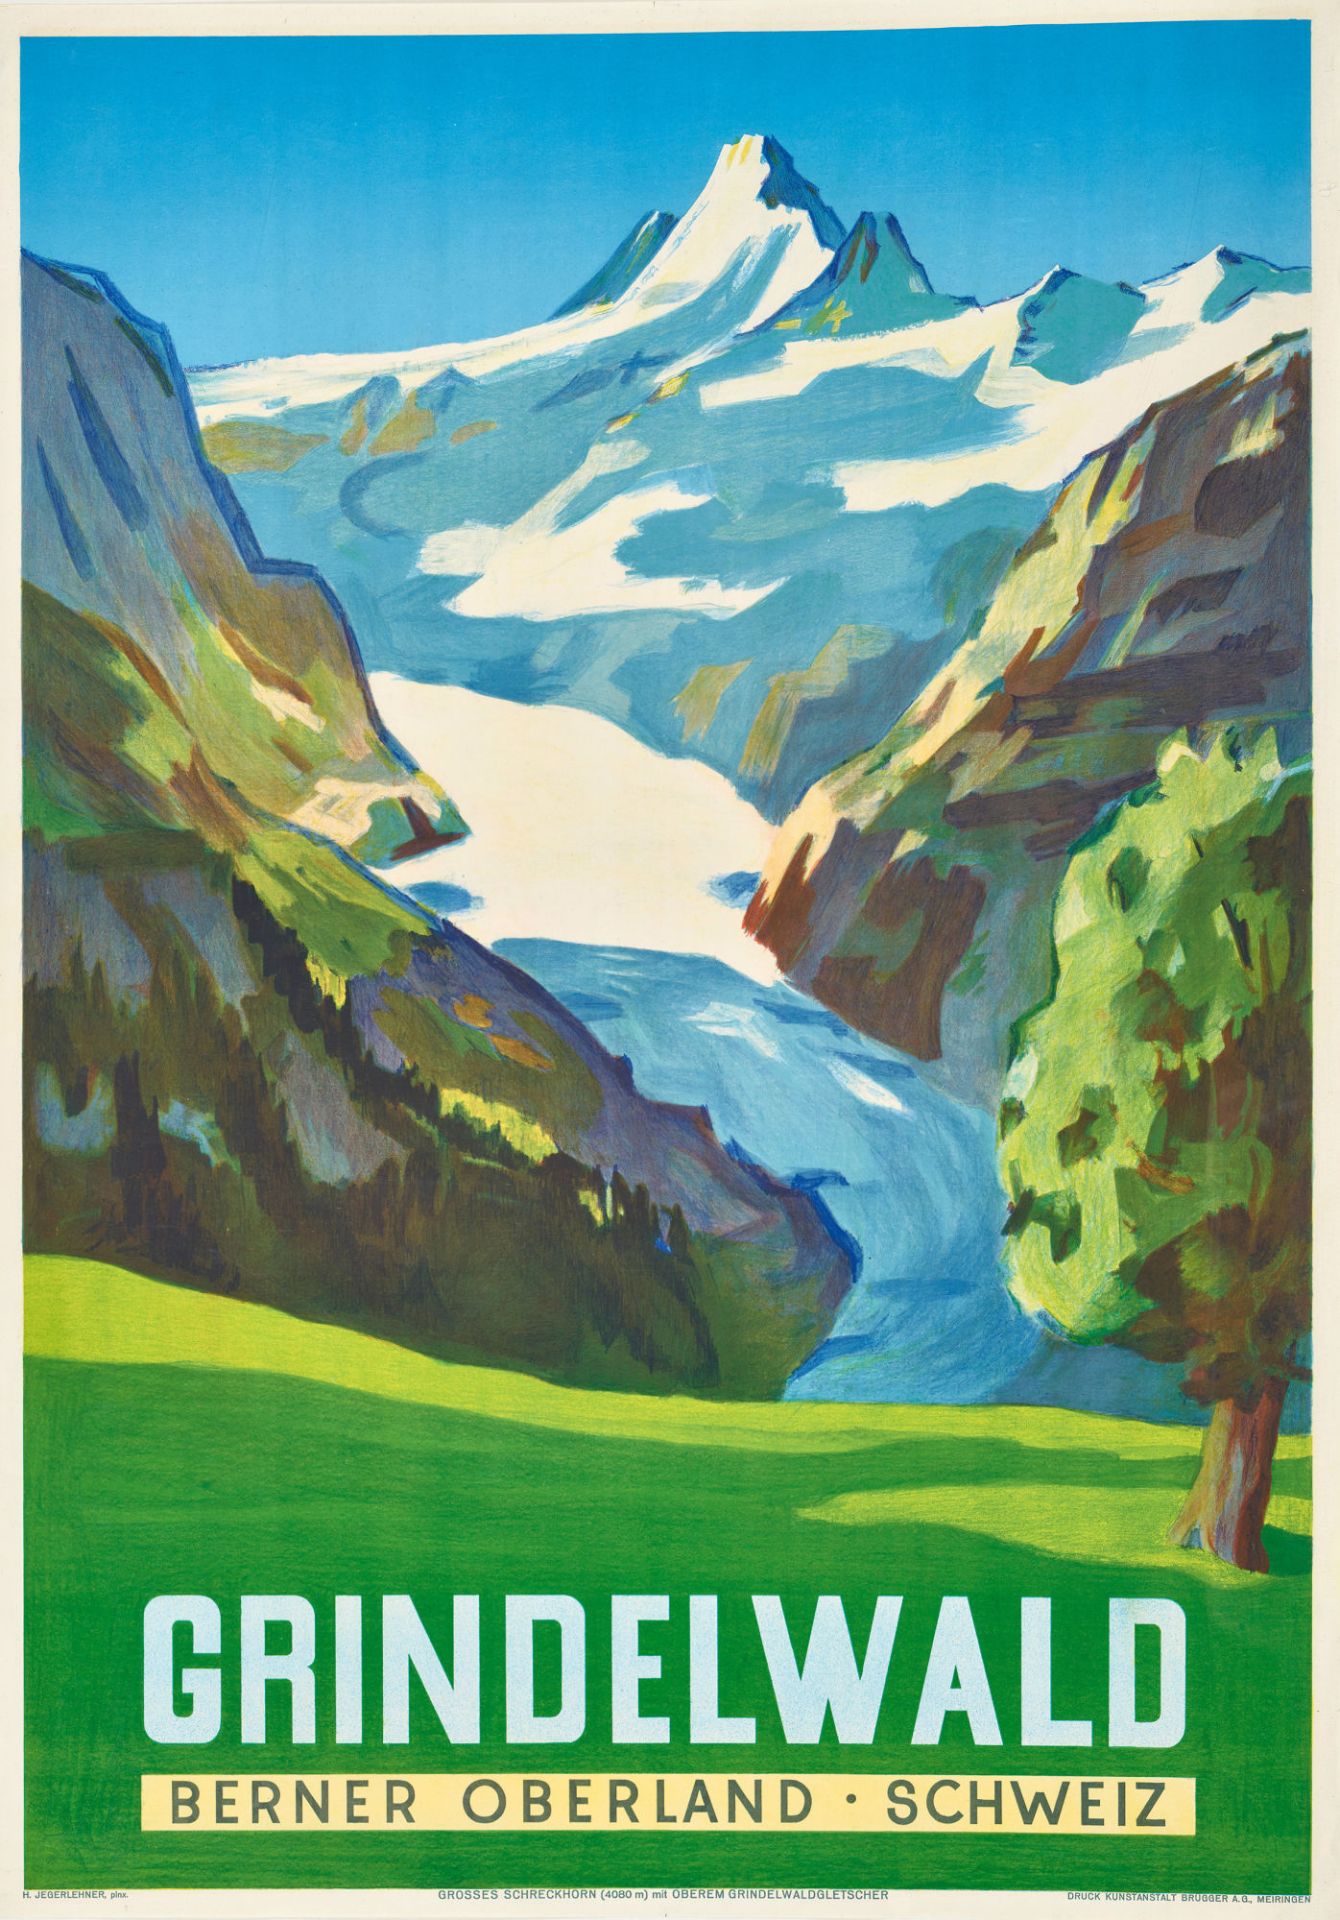 JEGERLEHNER, HANS: "Grindelwald".